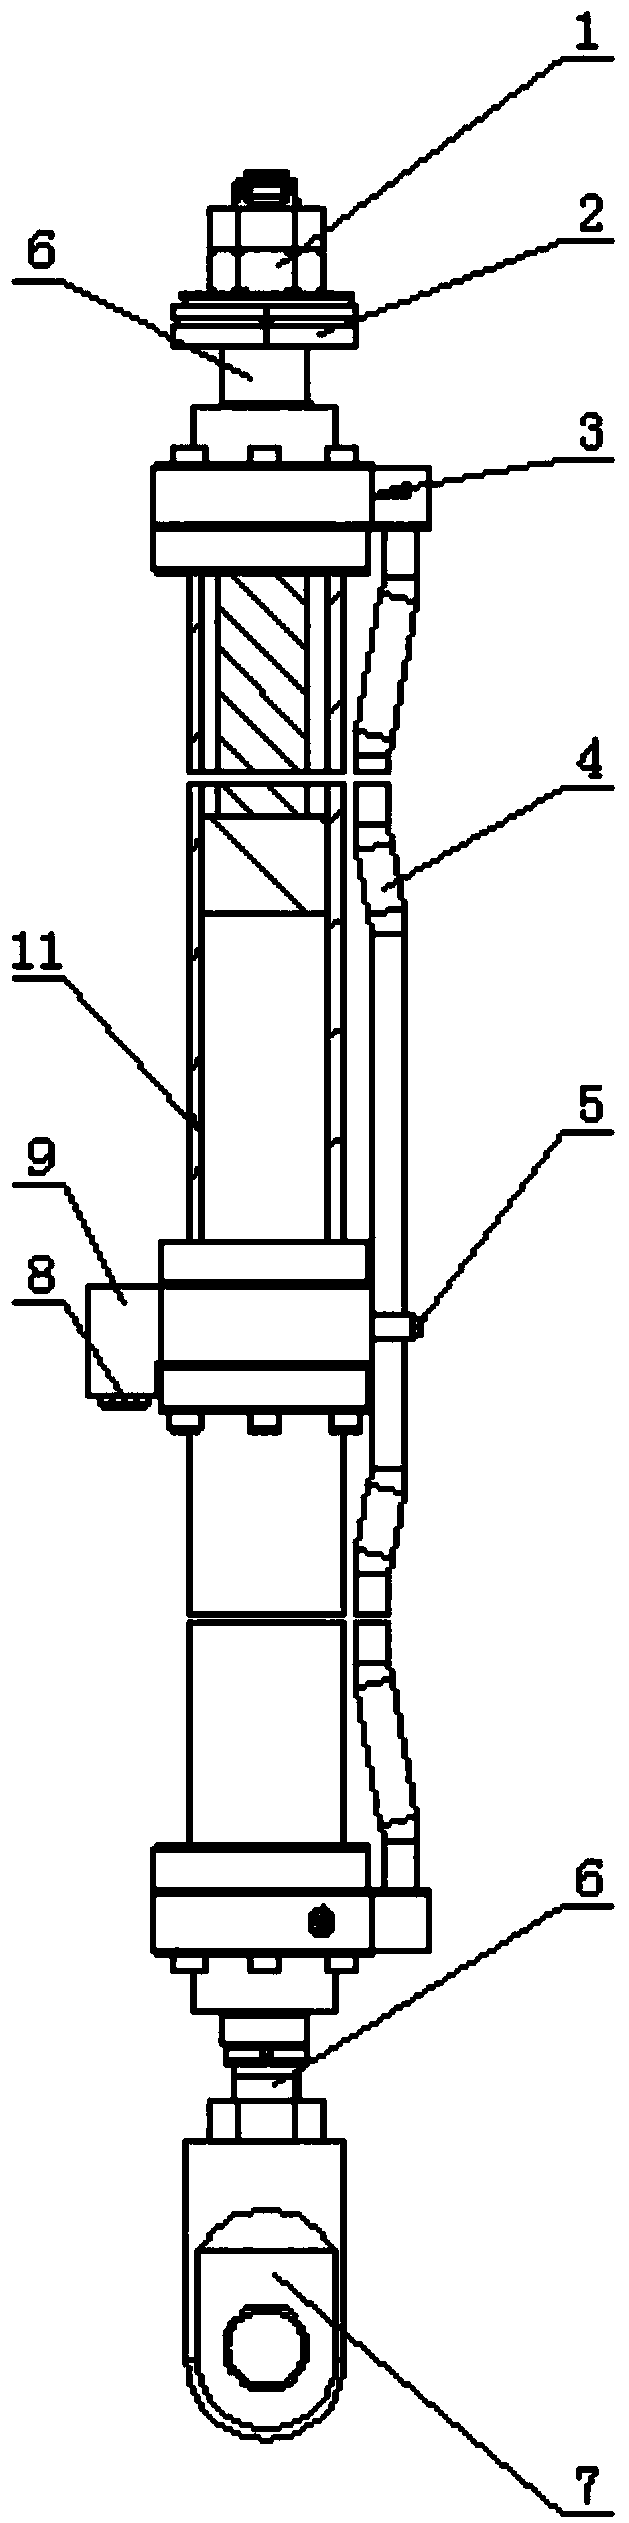 A hydraulic pumping unit